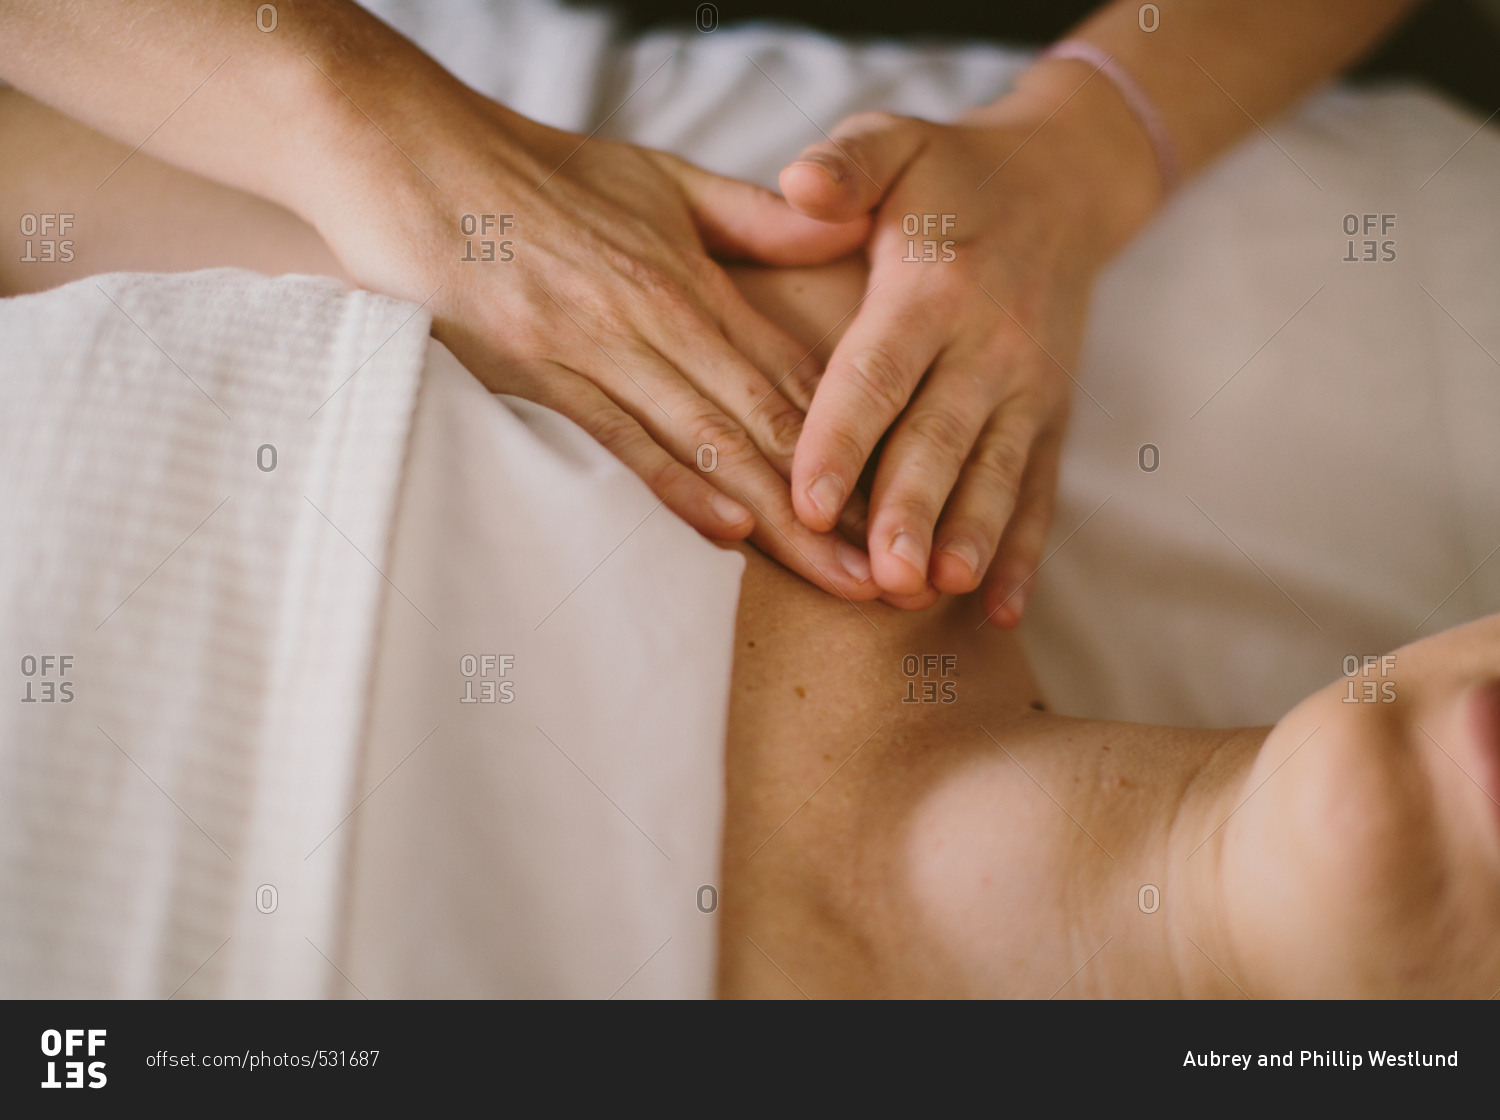 Hands giving a massage